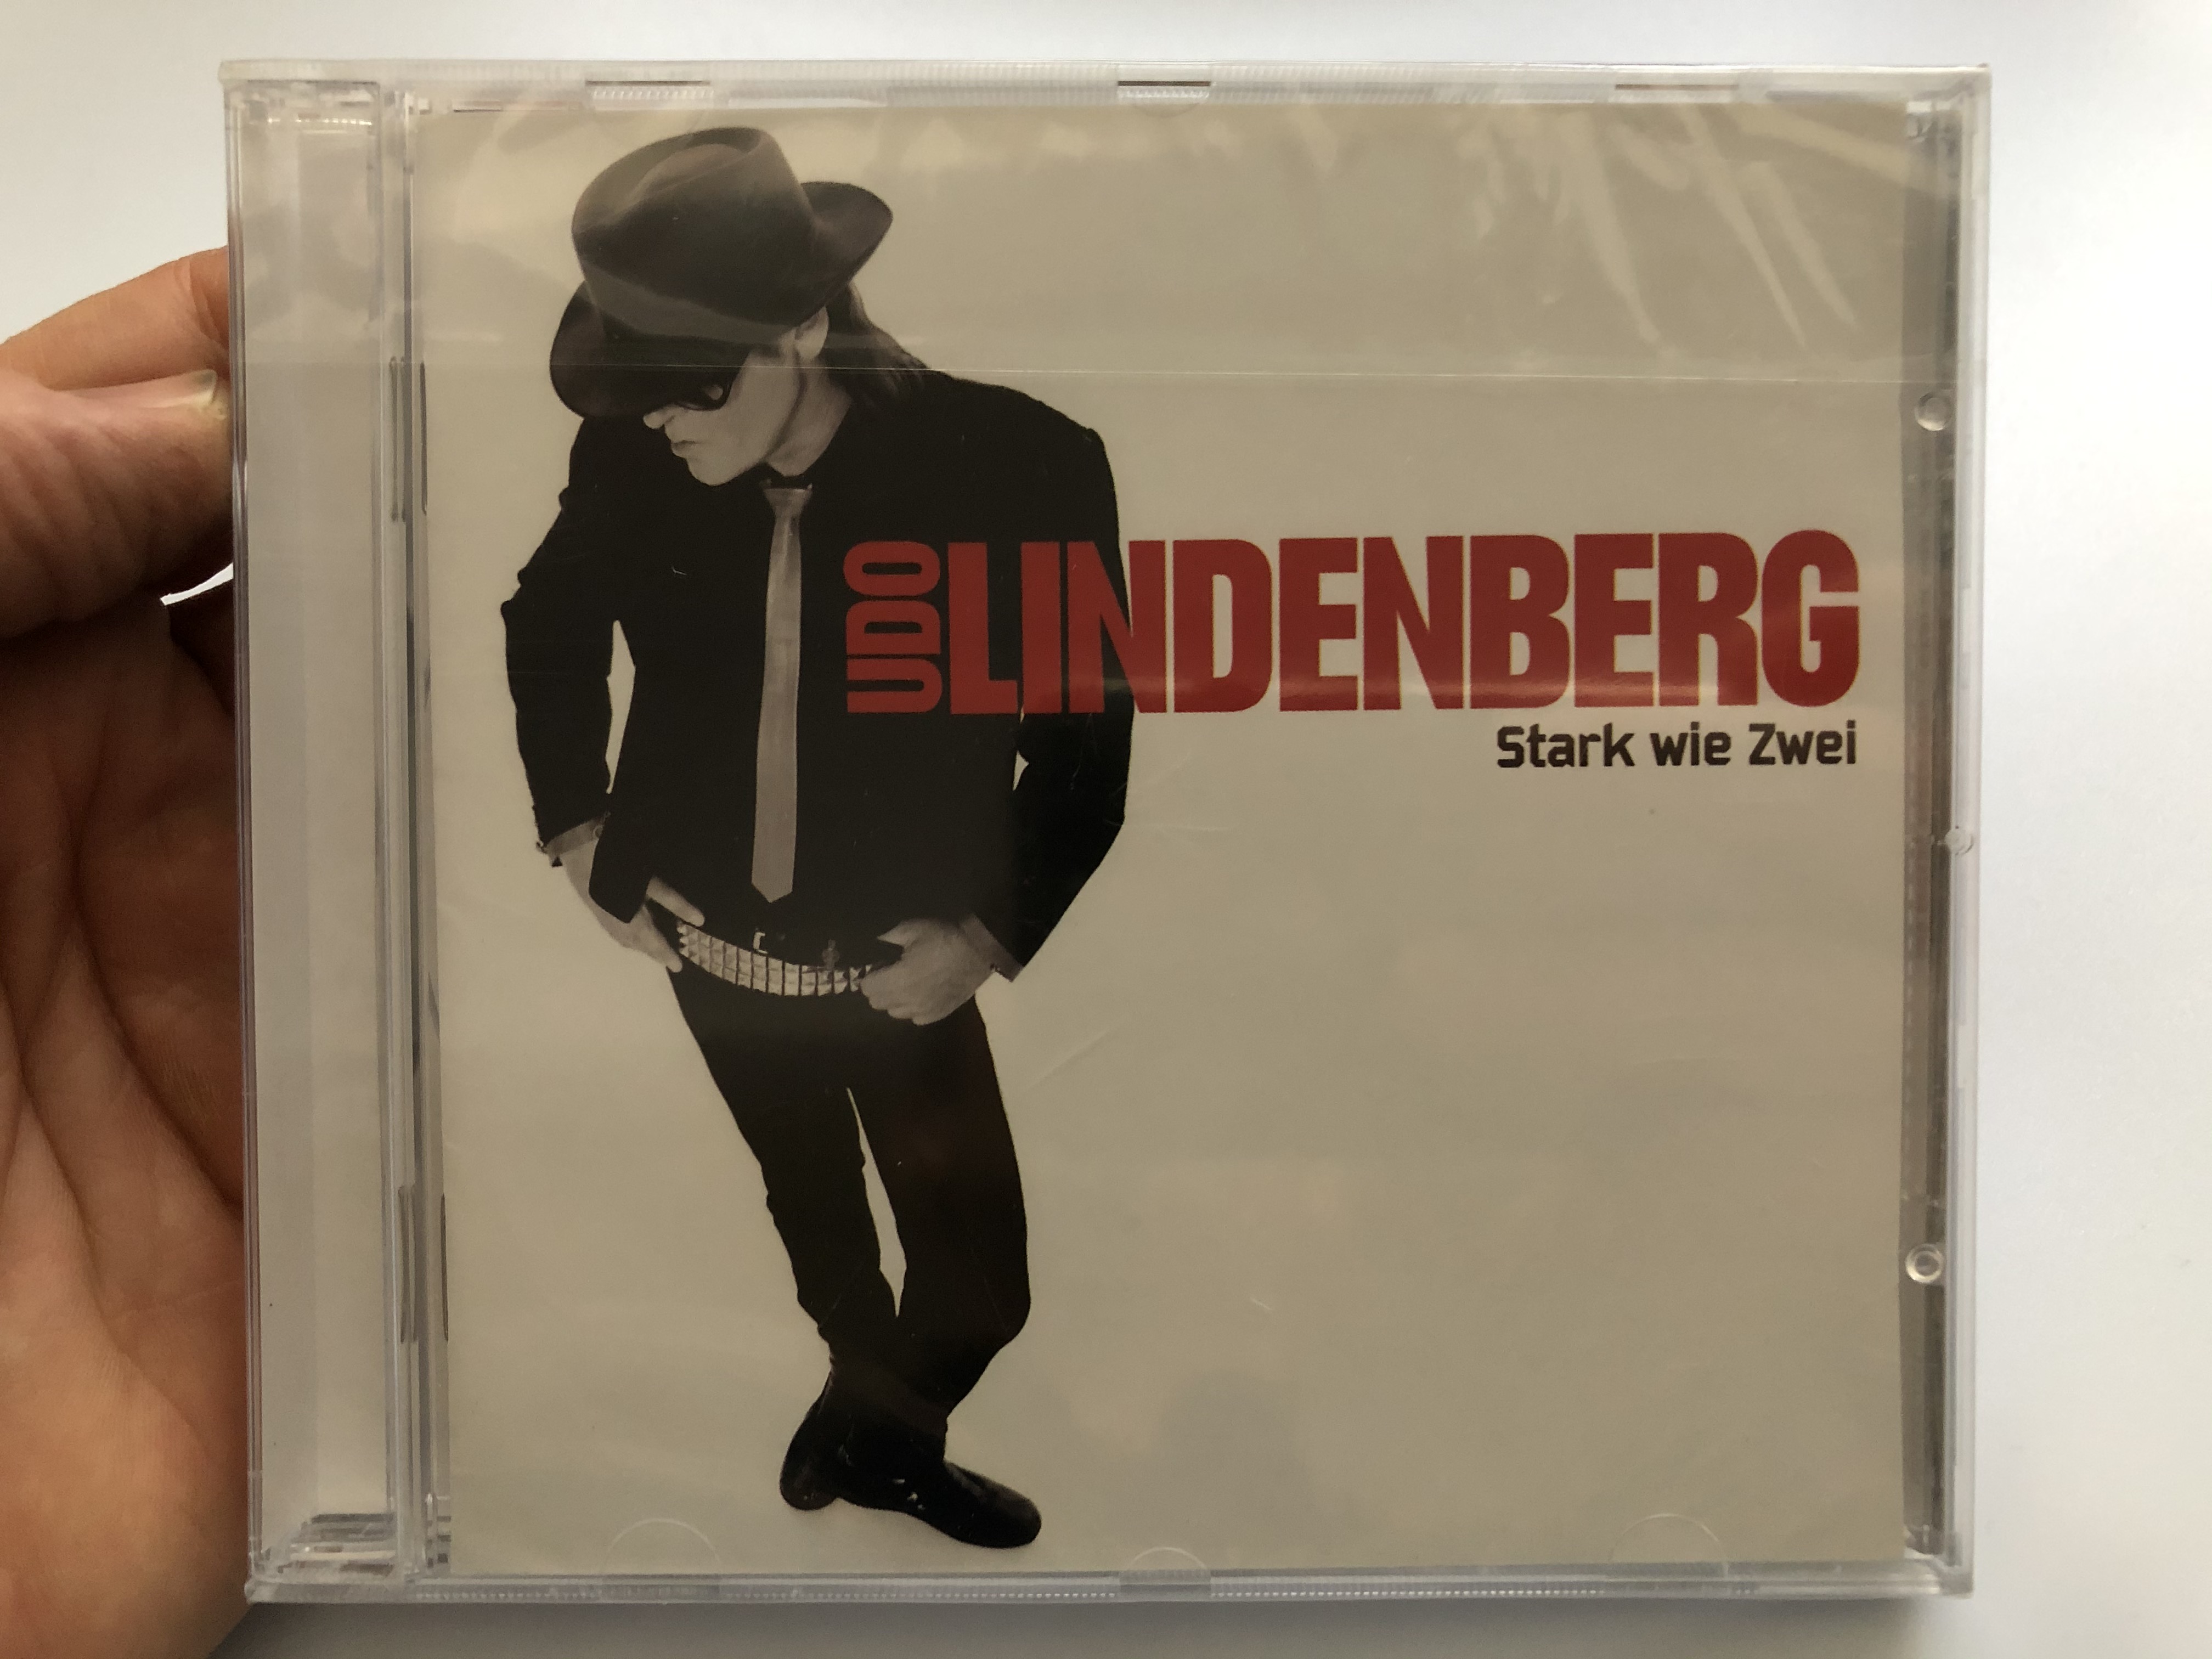 udo-lindenberg-stark-wie-zwei-starwatch-music-audio-cd-2008-5051442-7704-2-1-1-.jpg